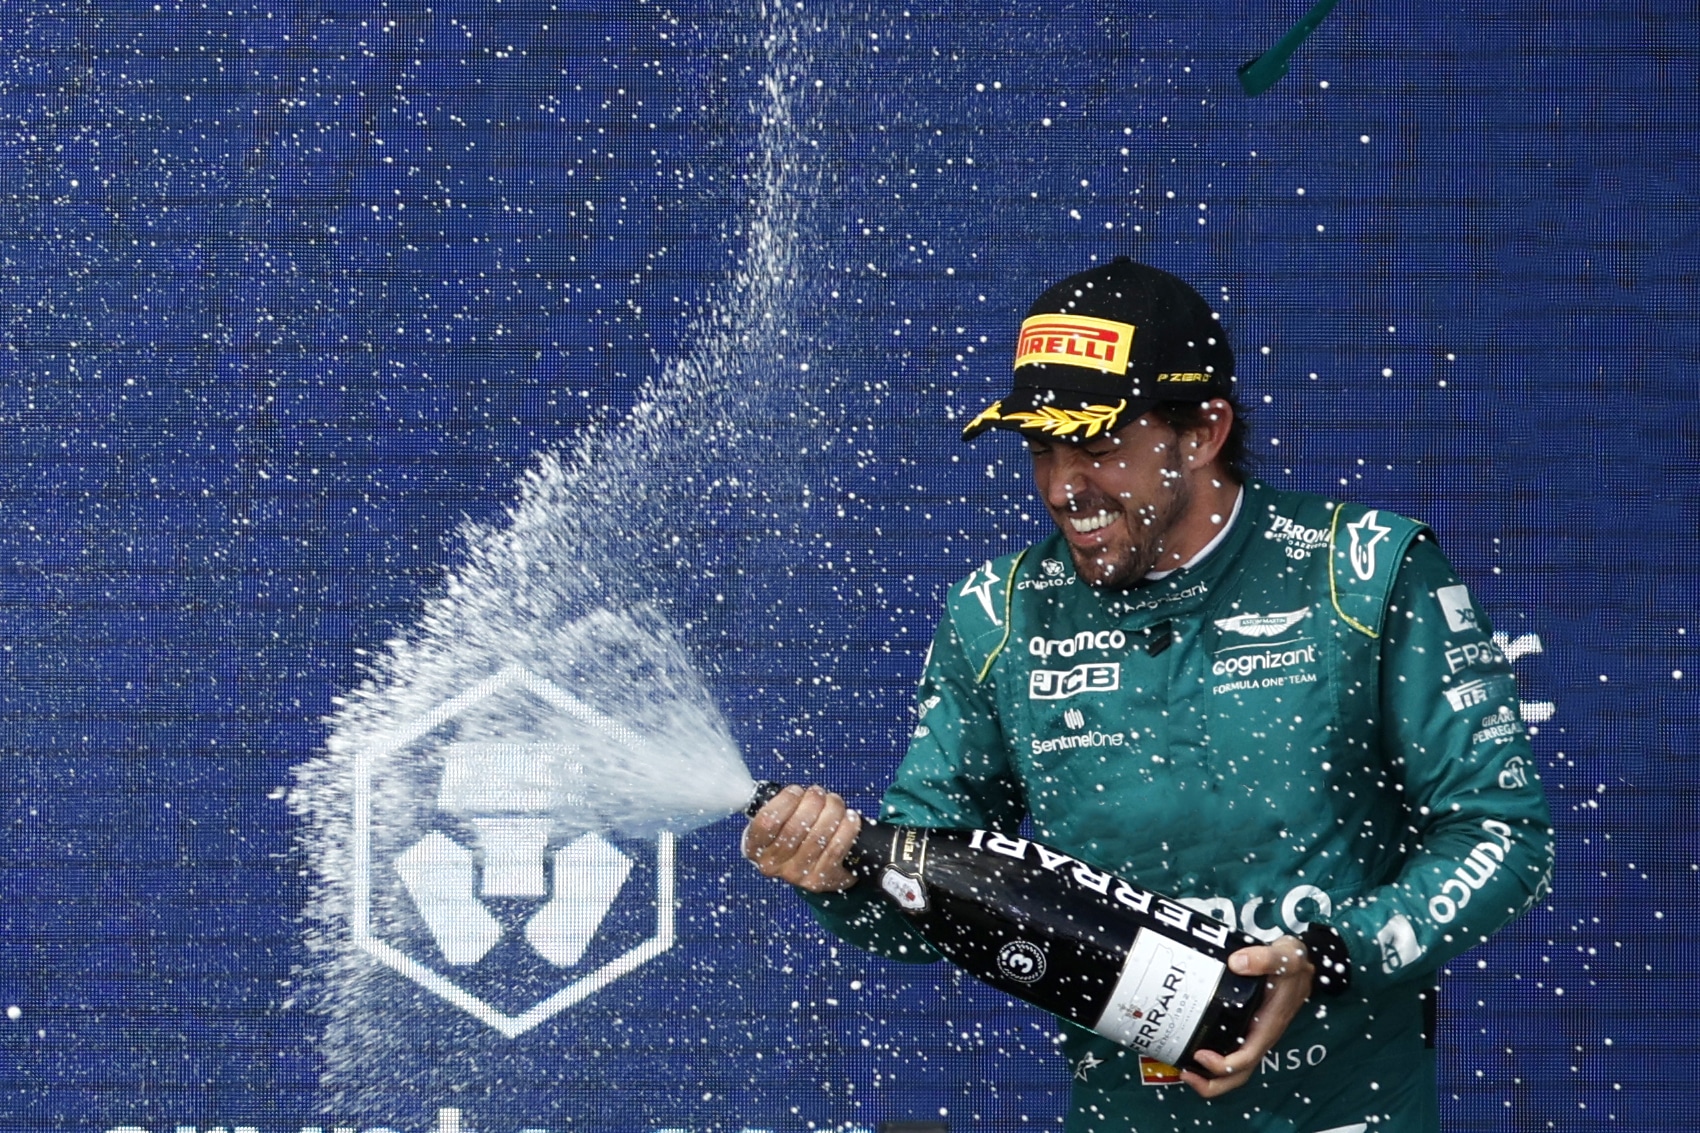 - Une légende du sport automobile fait une affirmation audacieuse sur Alonso